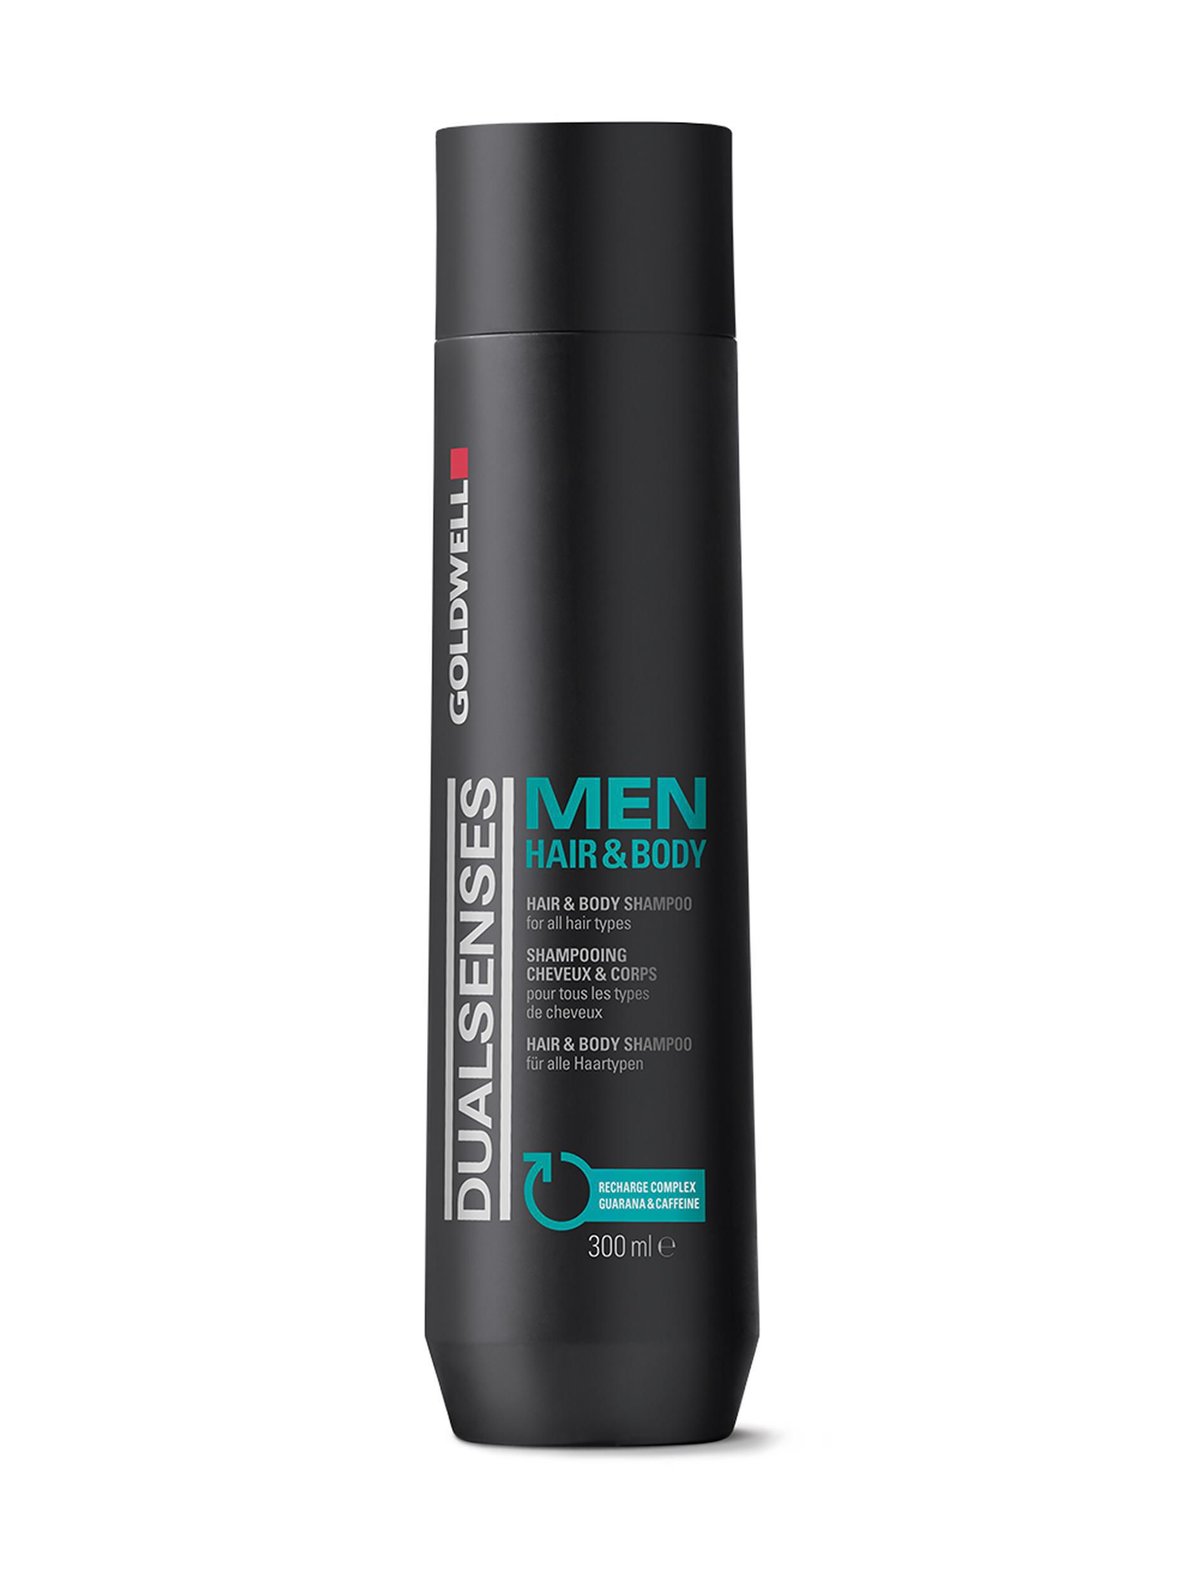 Dualsenses Men Hair & Body Shampoo 300 ml, Goldwell